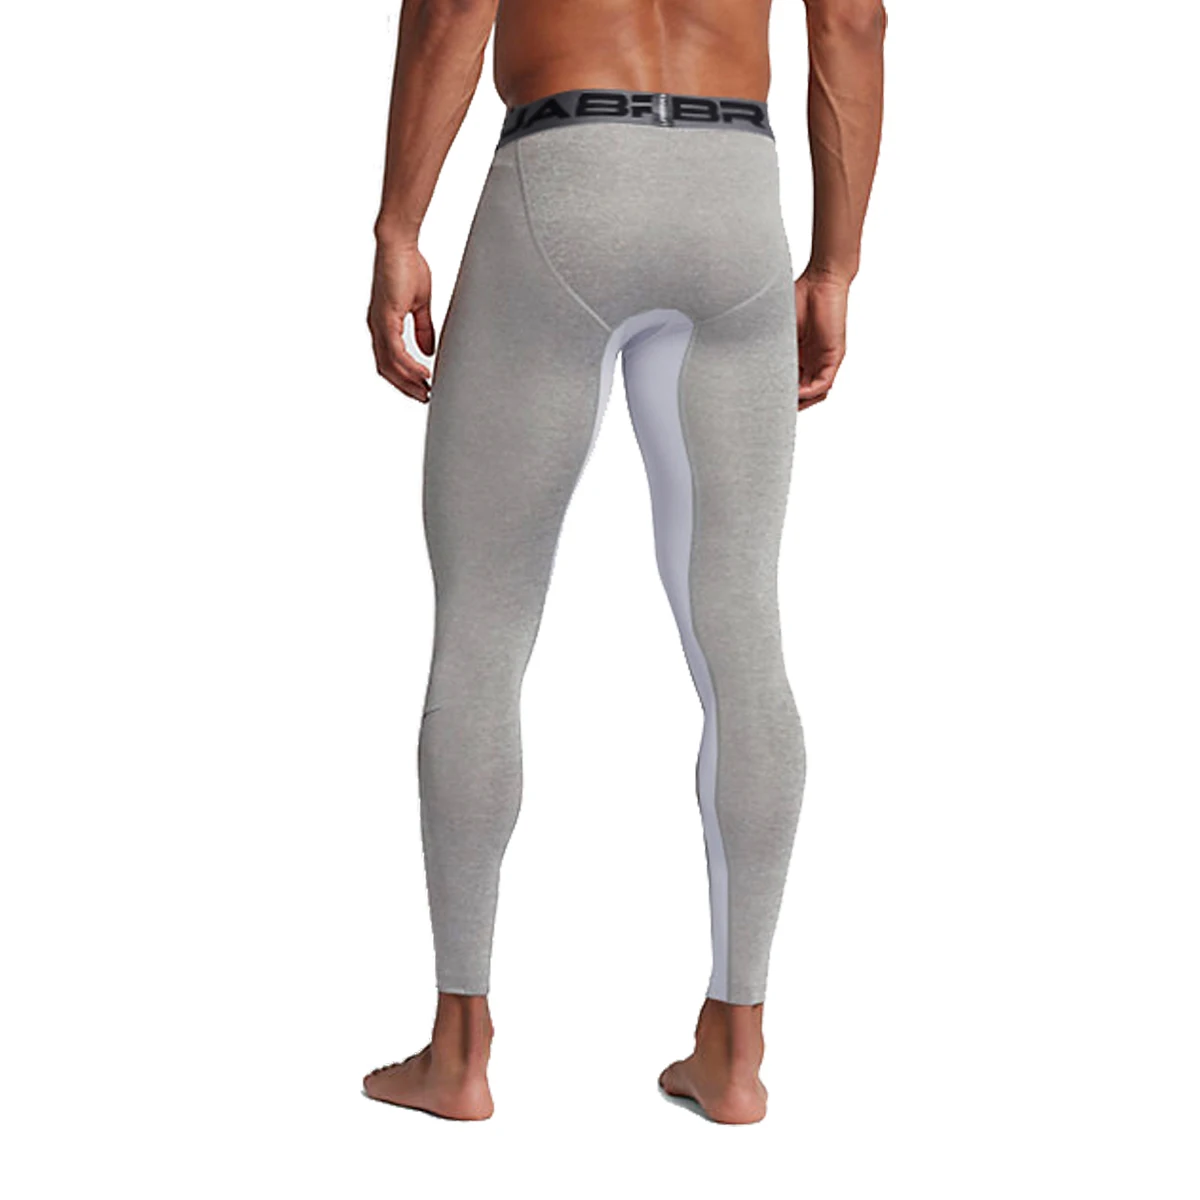 SFIT колготки для мужчин быстросохнущие компрессионные штаны пот брюки для бега серый черный бег спортивная одежда тренажерный зал леггинсы для фитнеса